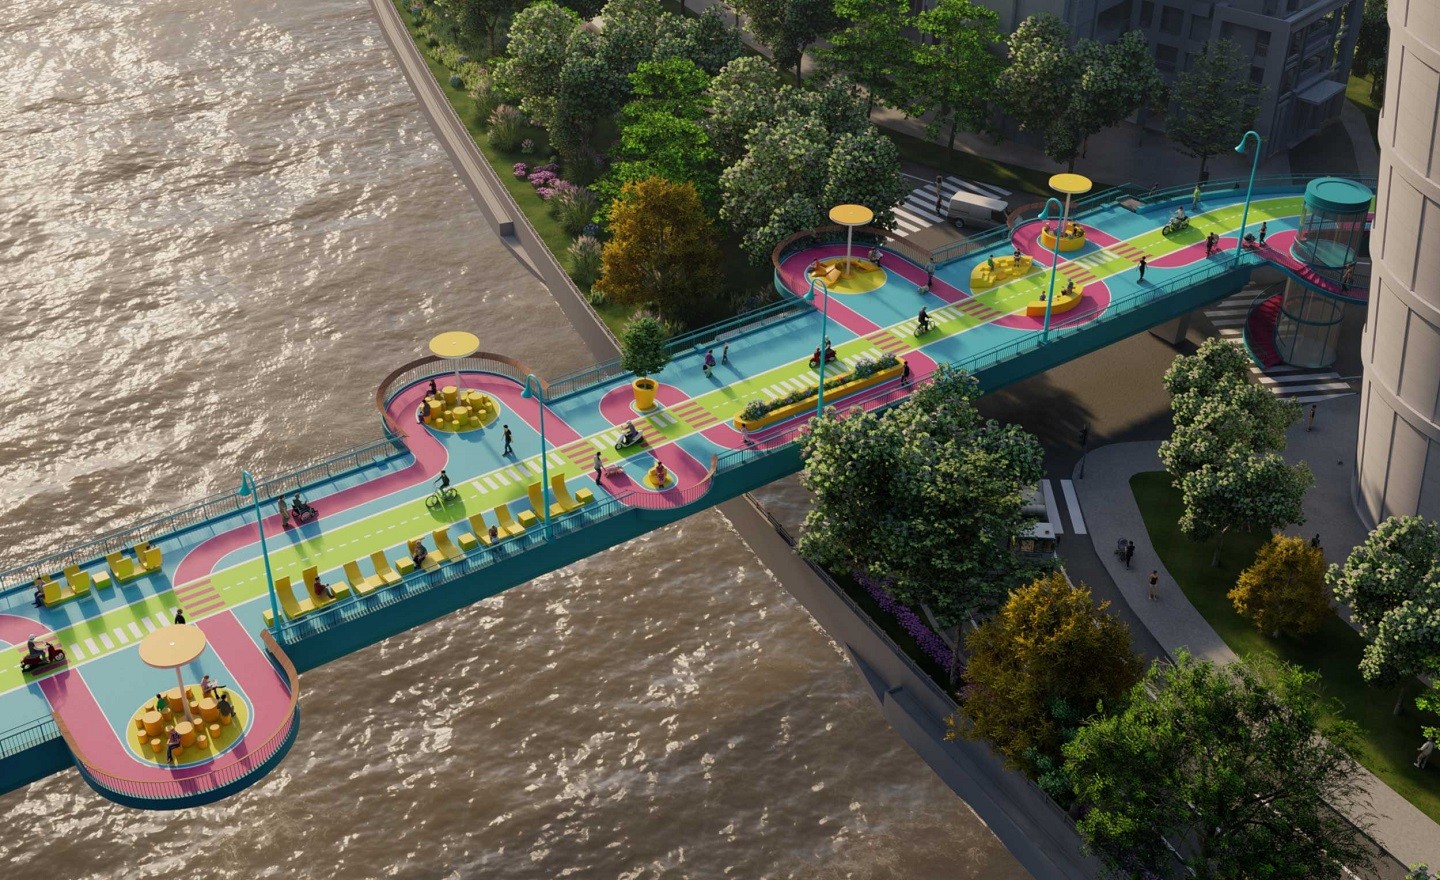 Estúdio projeta ponte com cores brilhantes e formas divertidas em Xangai (Foto: 100architects)